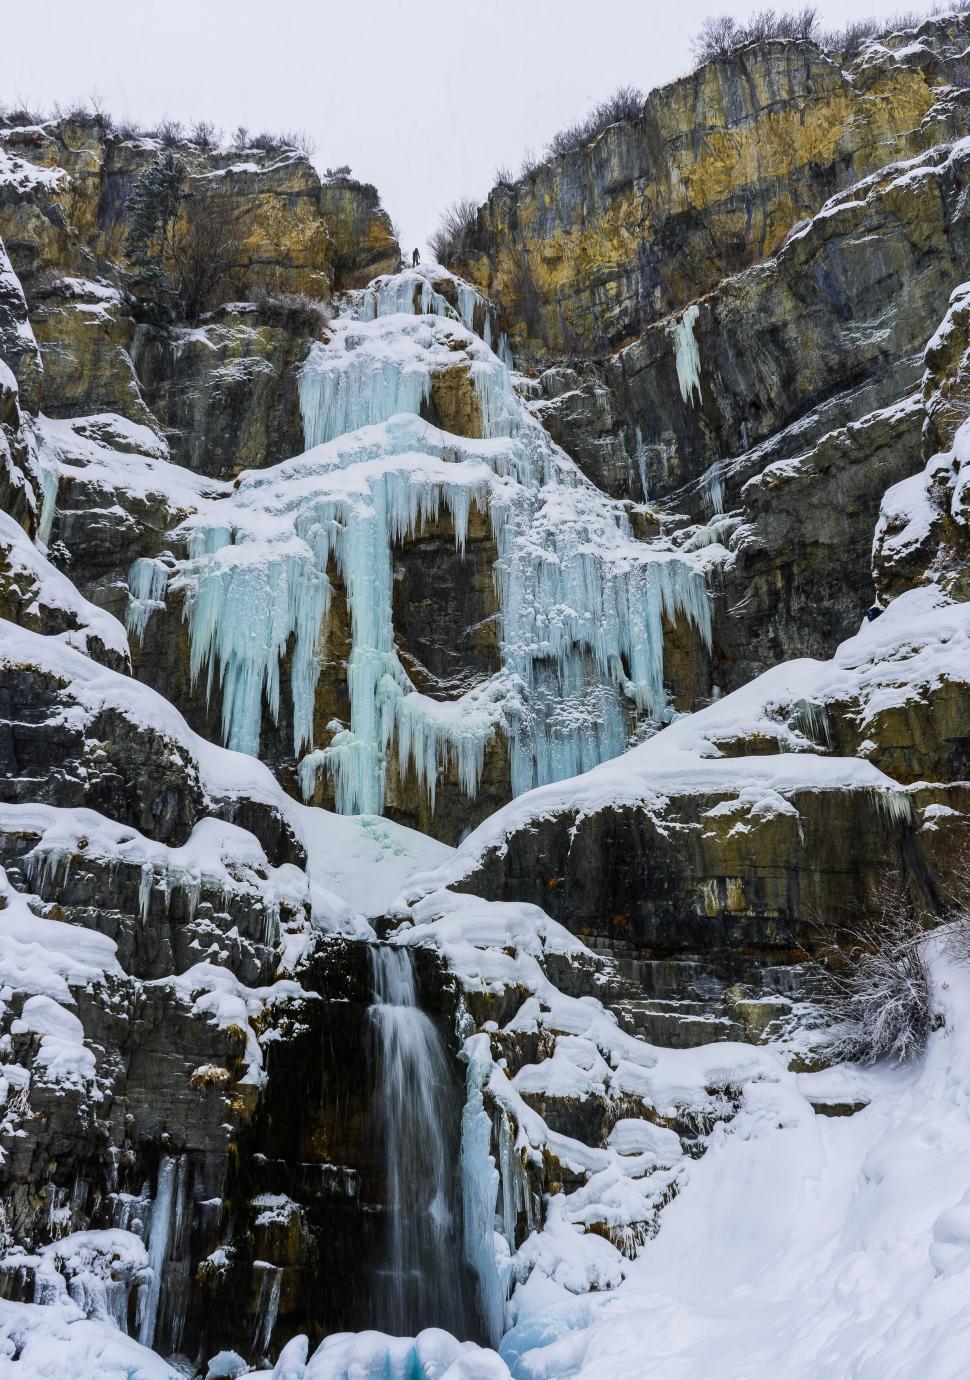 Free Image of Frozen waterfall in a winter landscape 